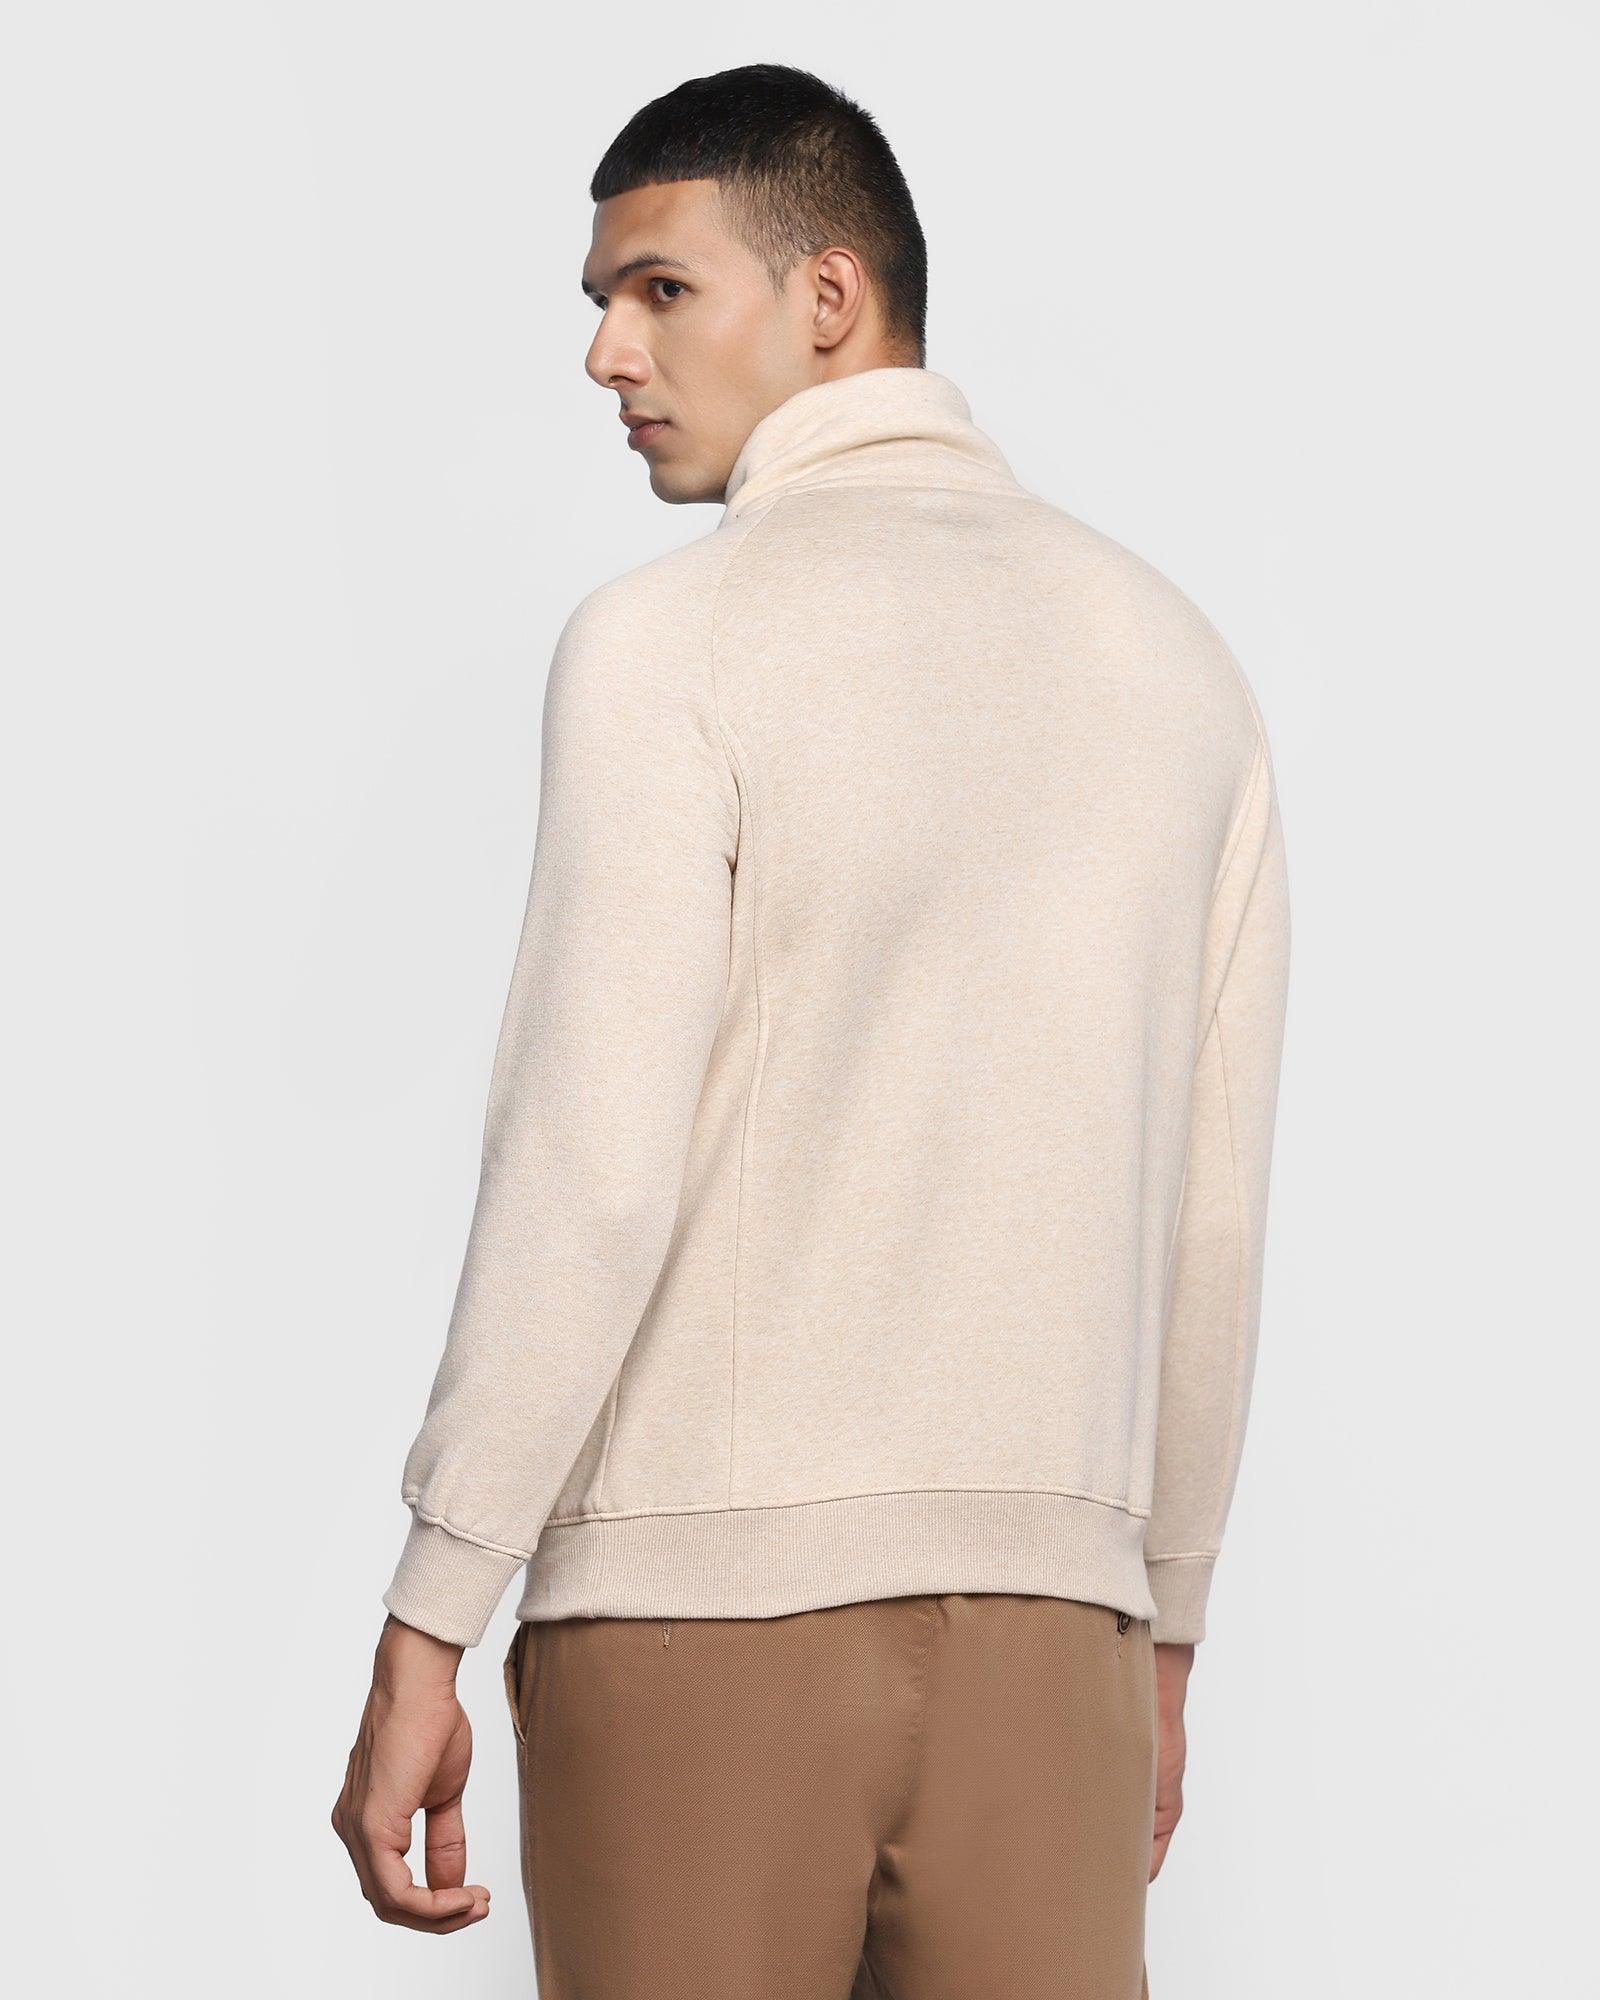 Stylized Collar Beige Solid Sweatshirt - Kang